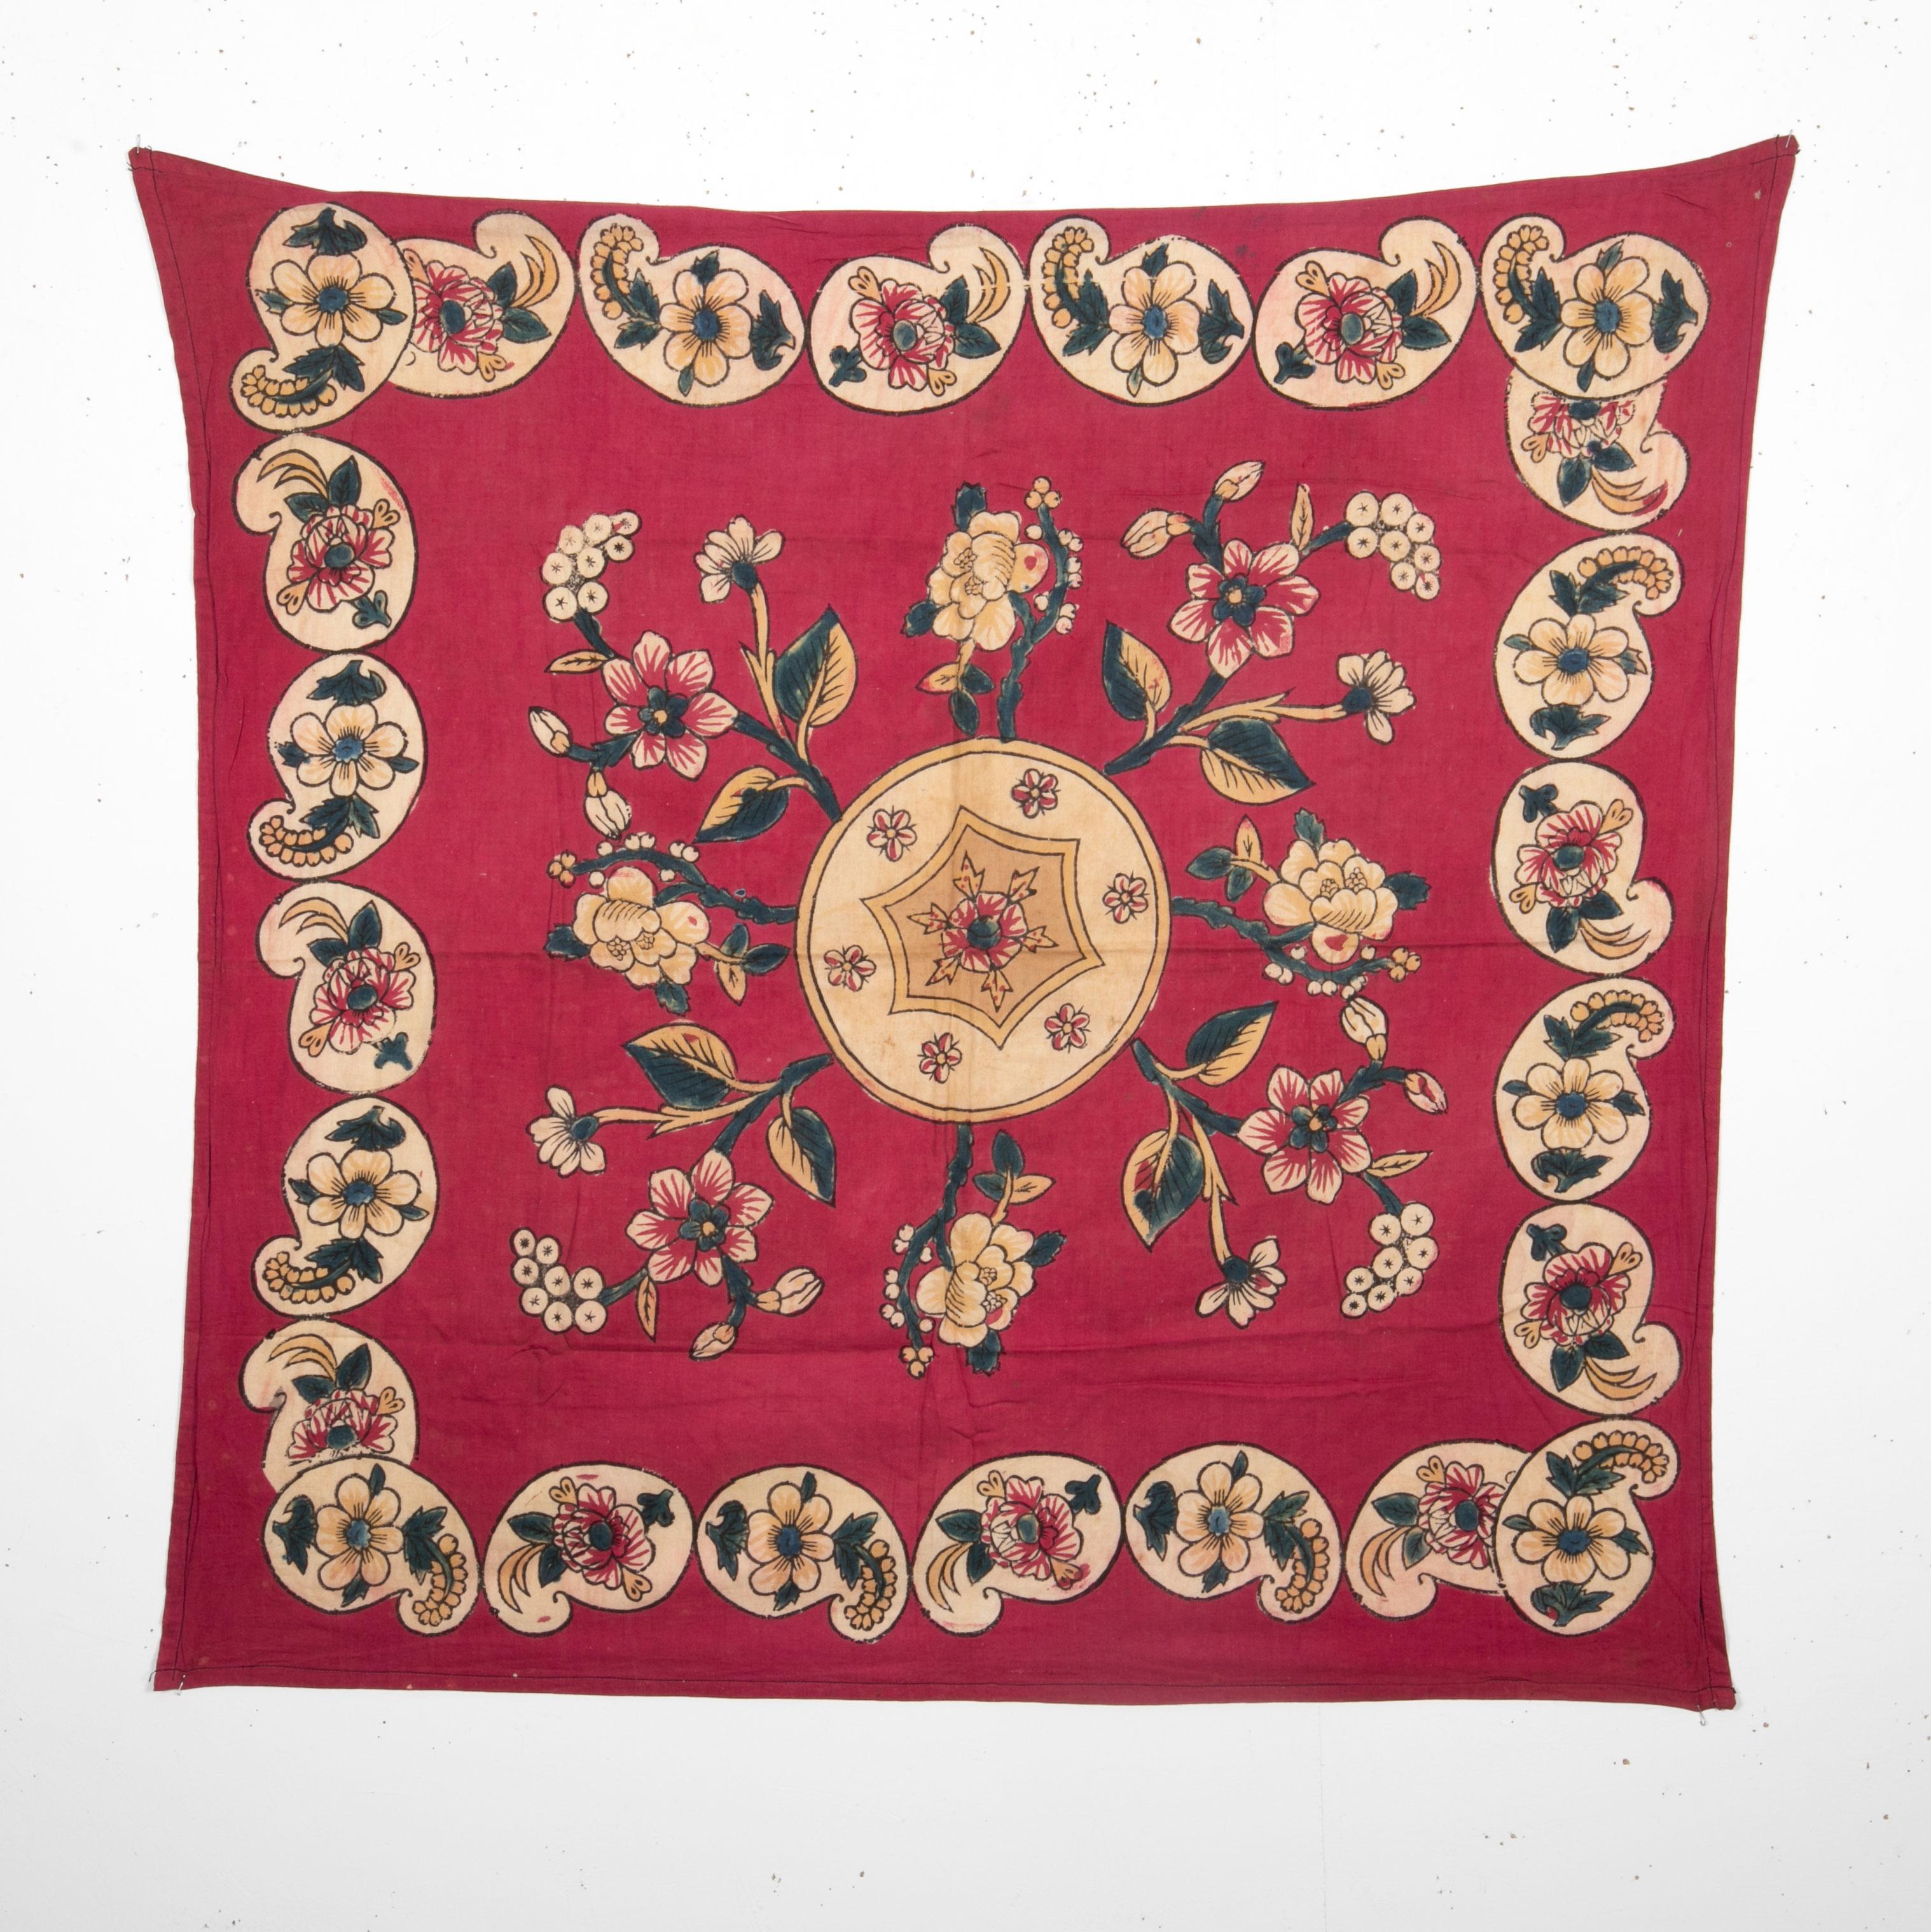 Il s'agit d'un textile d'art populaire datant de la première moitié du C.C. L'art de l'impression à la planche est encore pratiqué dans diverses régions de Turquie et cet exemple provient de Tokat.